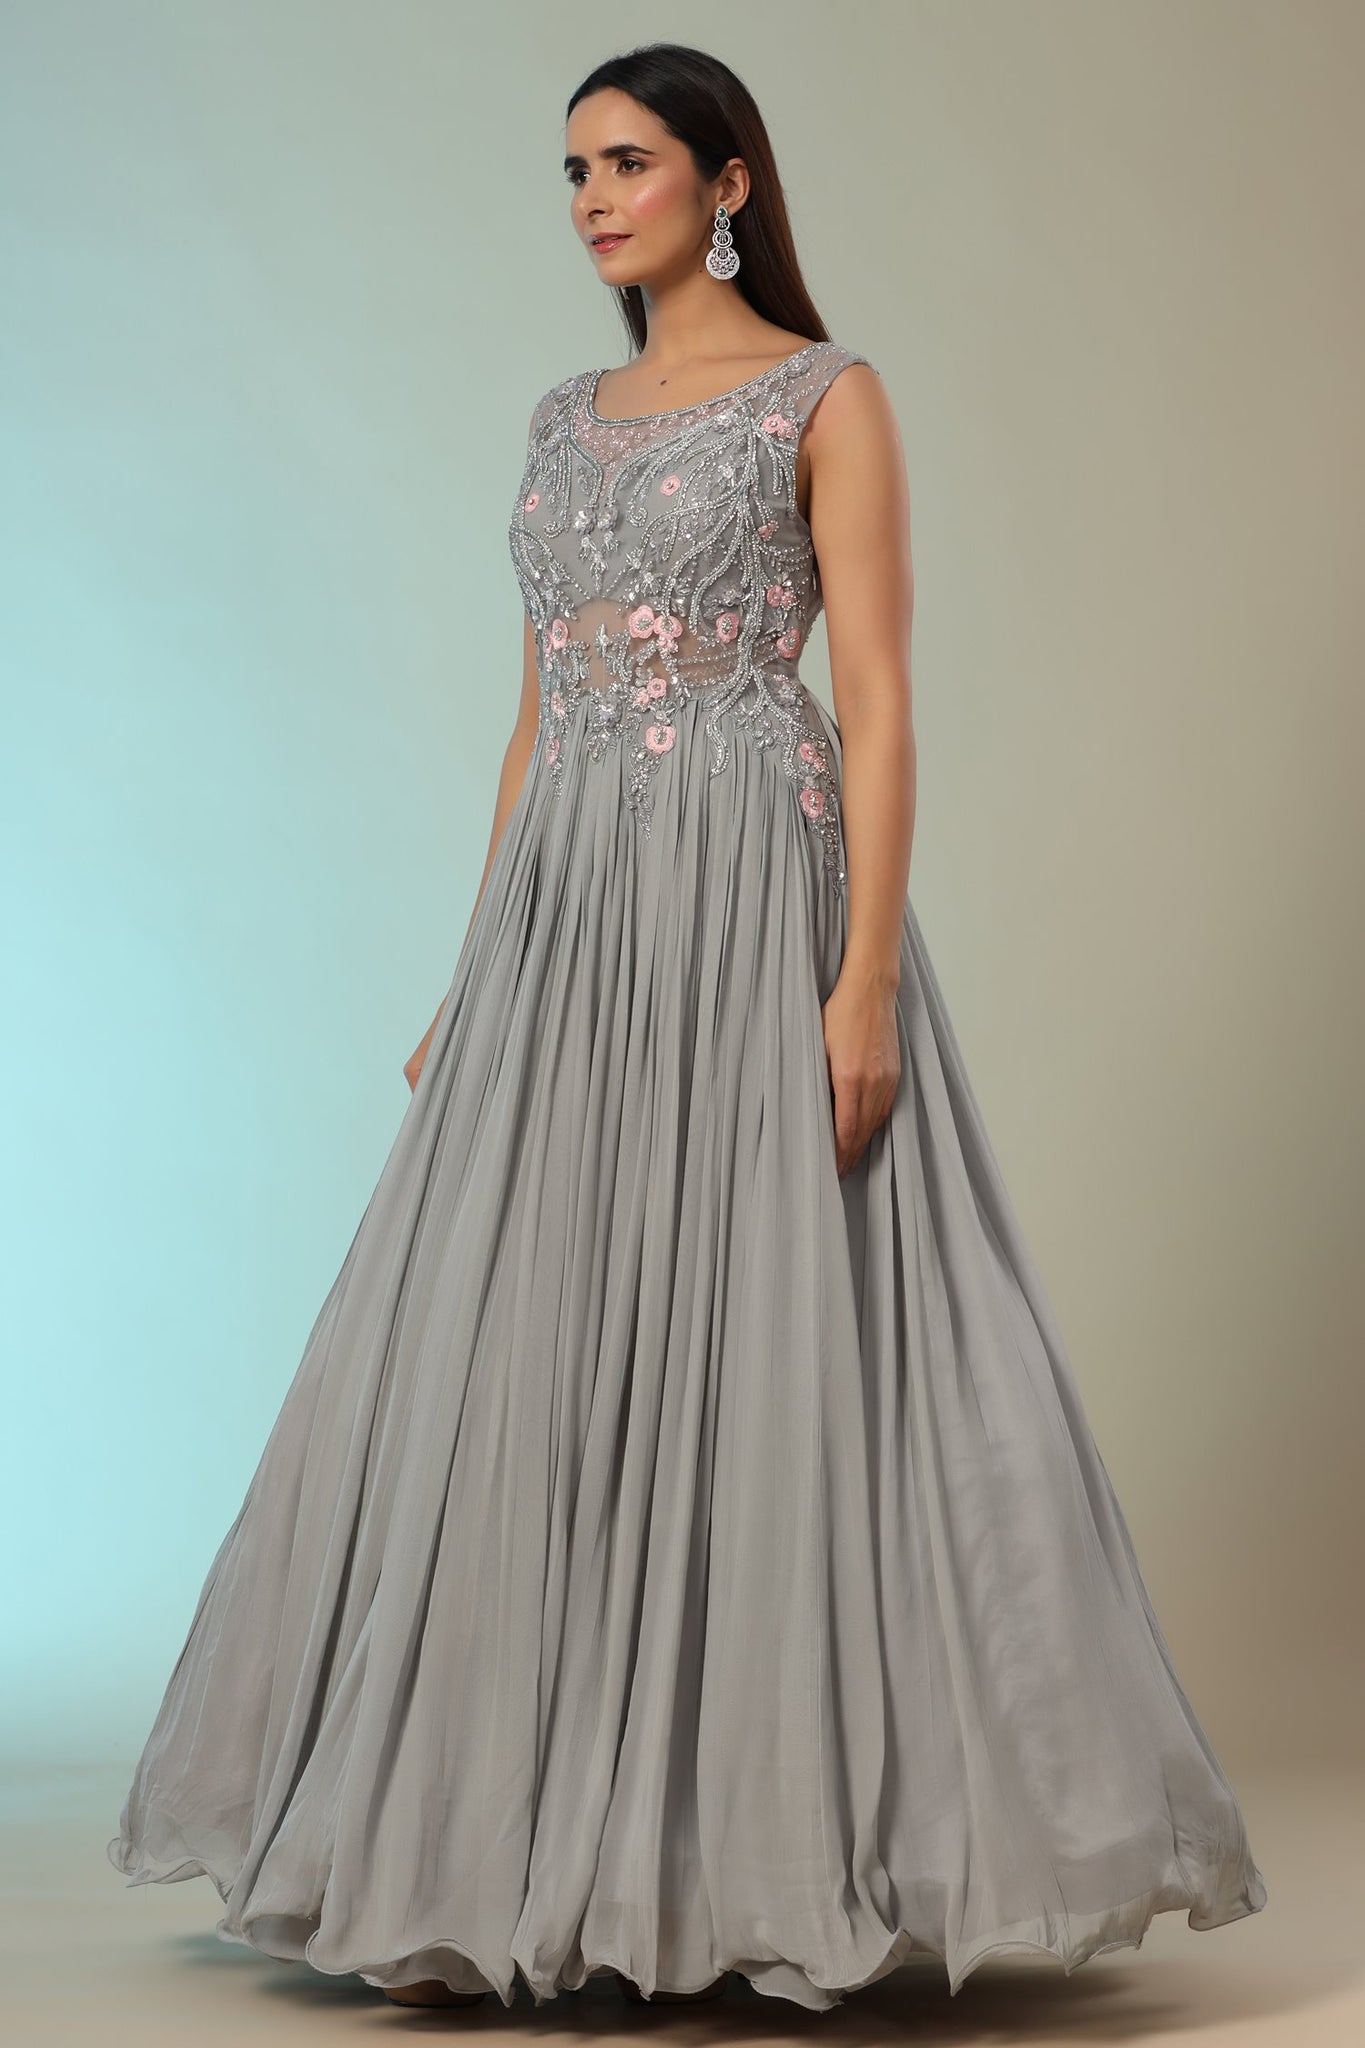 Ranas Grey Color Designer Gown